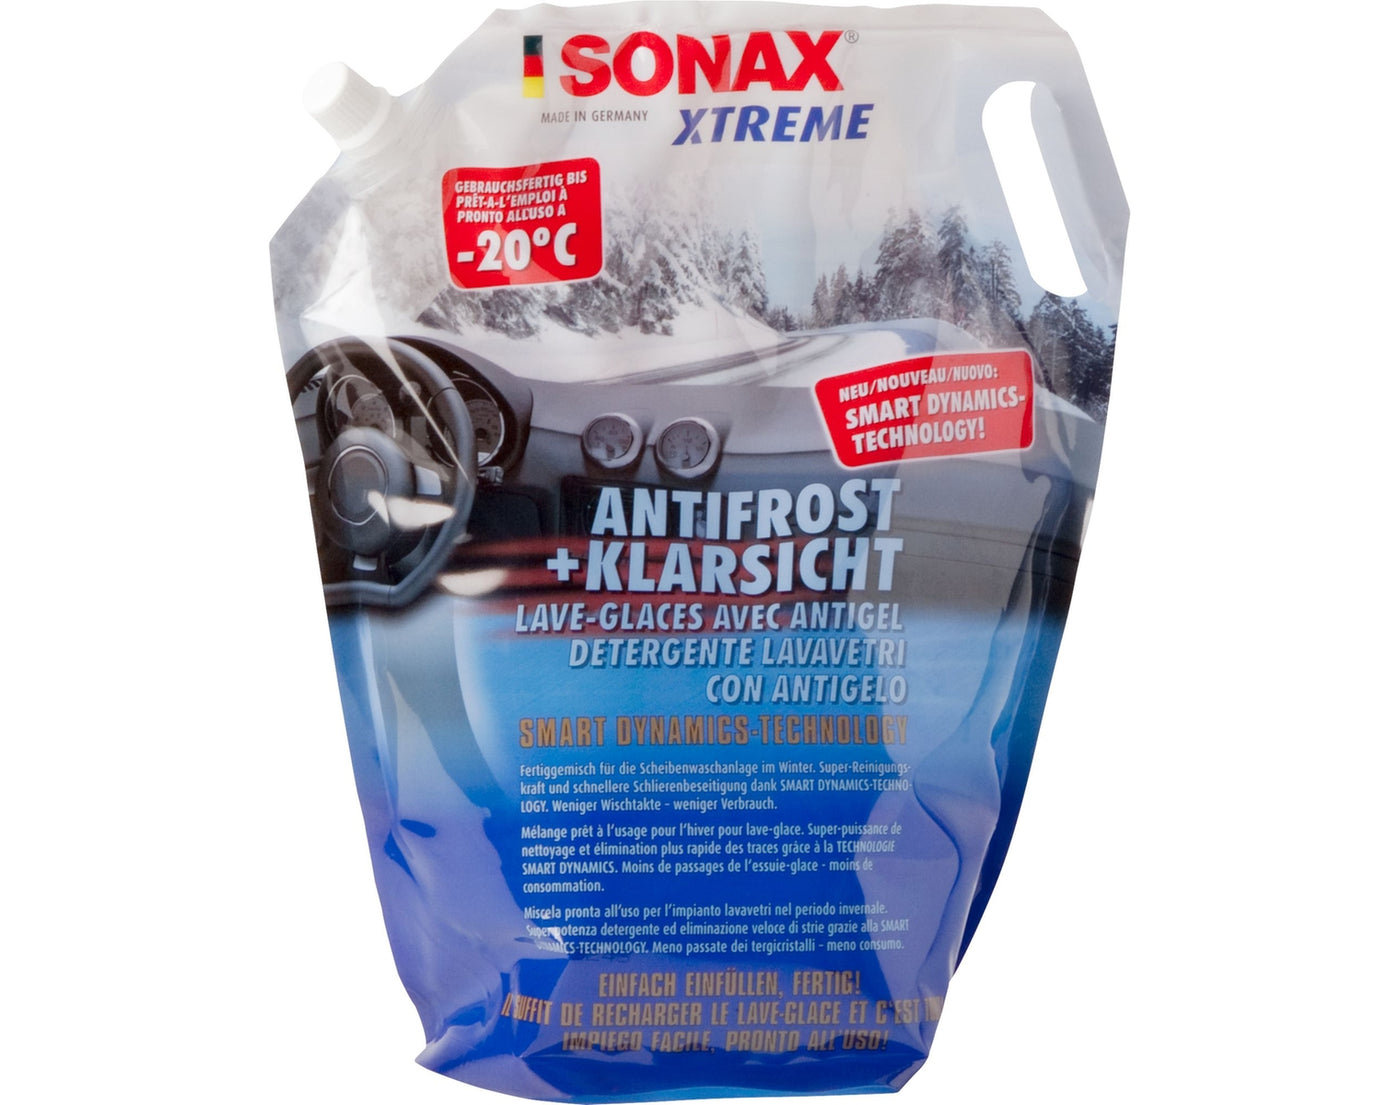 SONAX - XTREME AntiFrost und KlarSicht Winterfertigmischung, -20°C, Beutel à 2 Liter - Garage/Velos-Motos Allemann